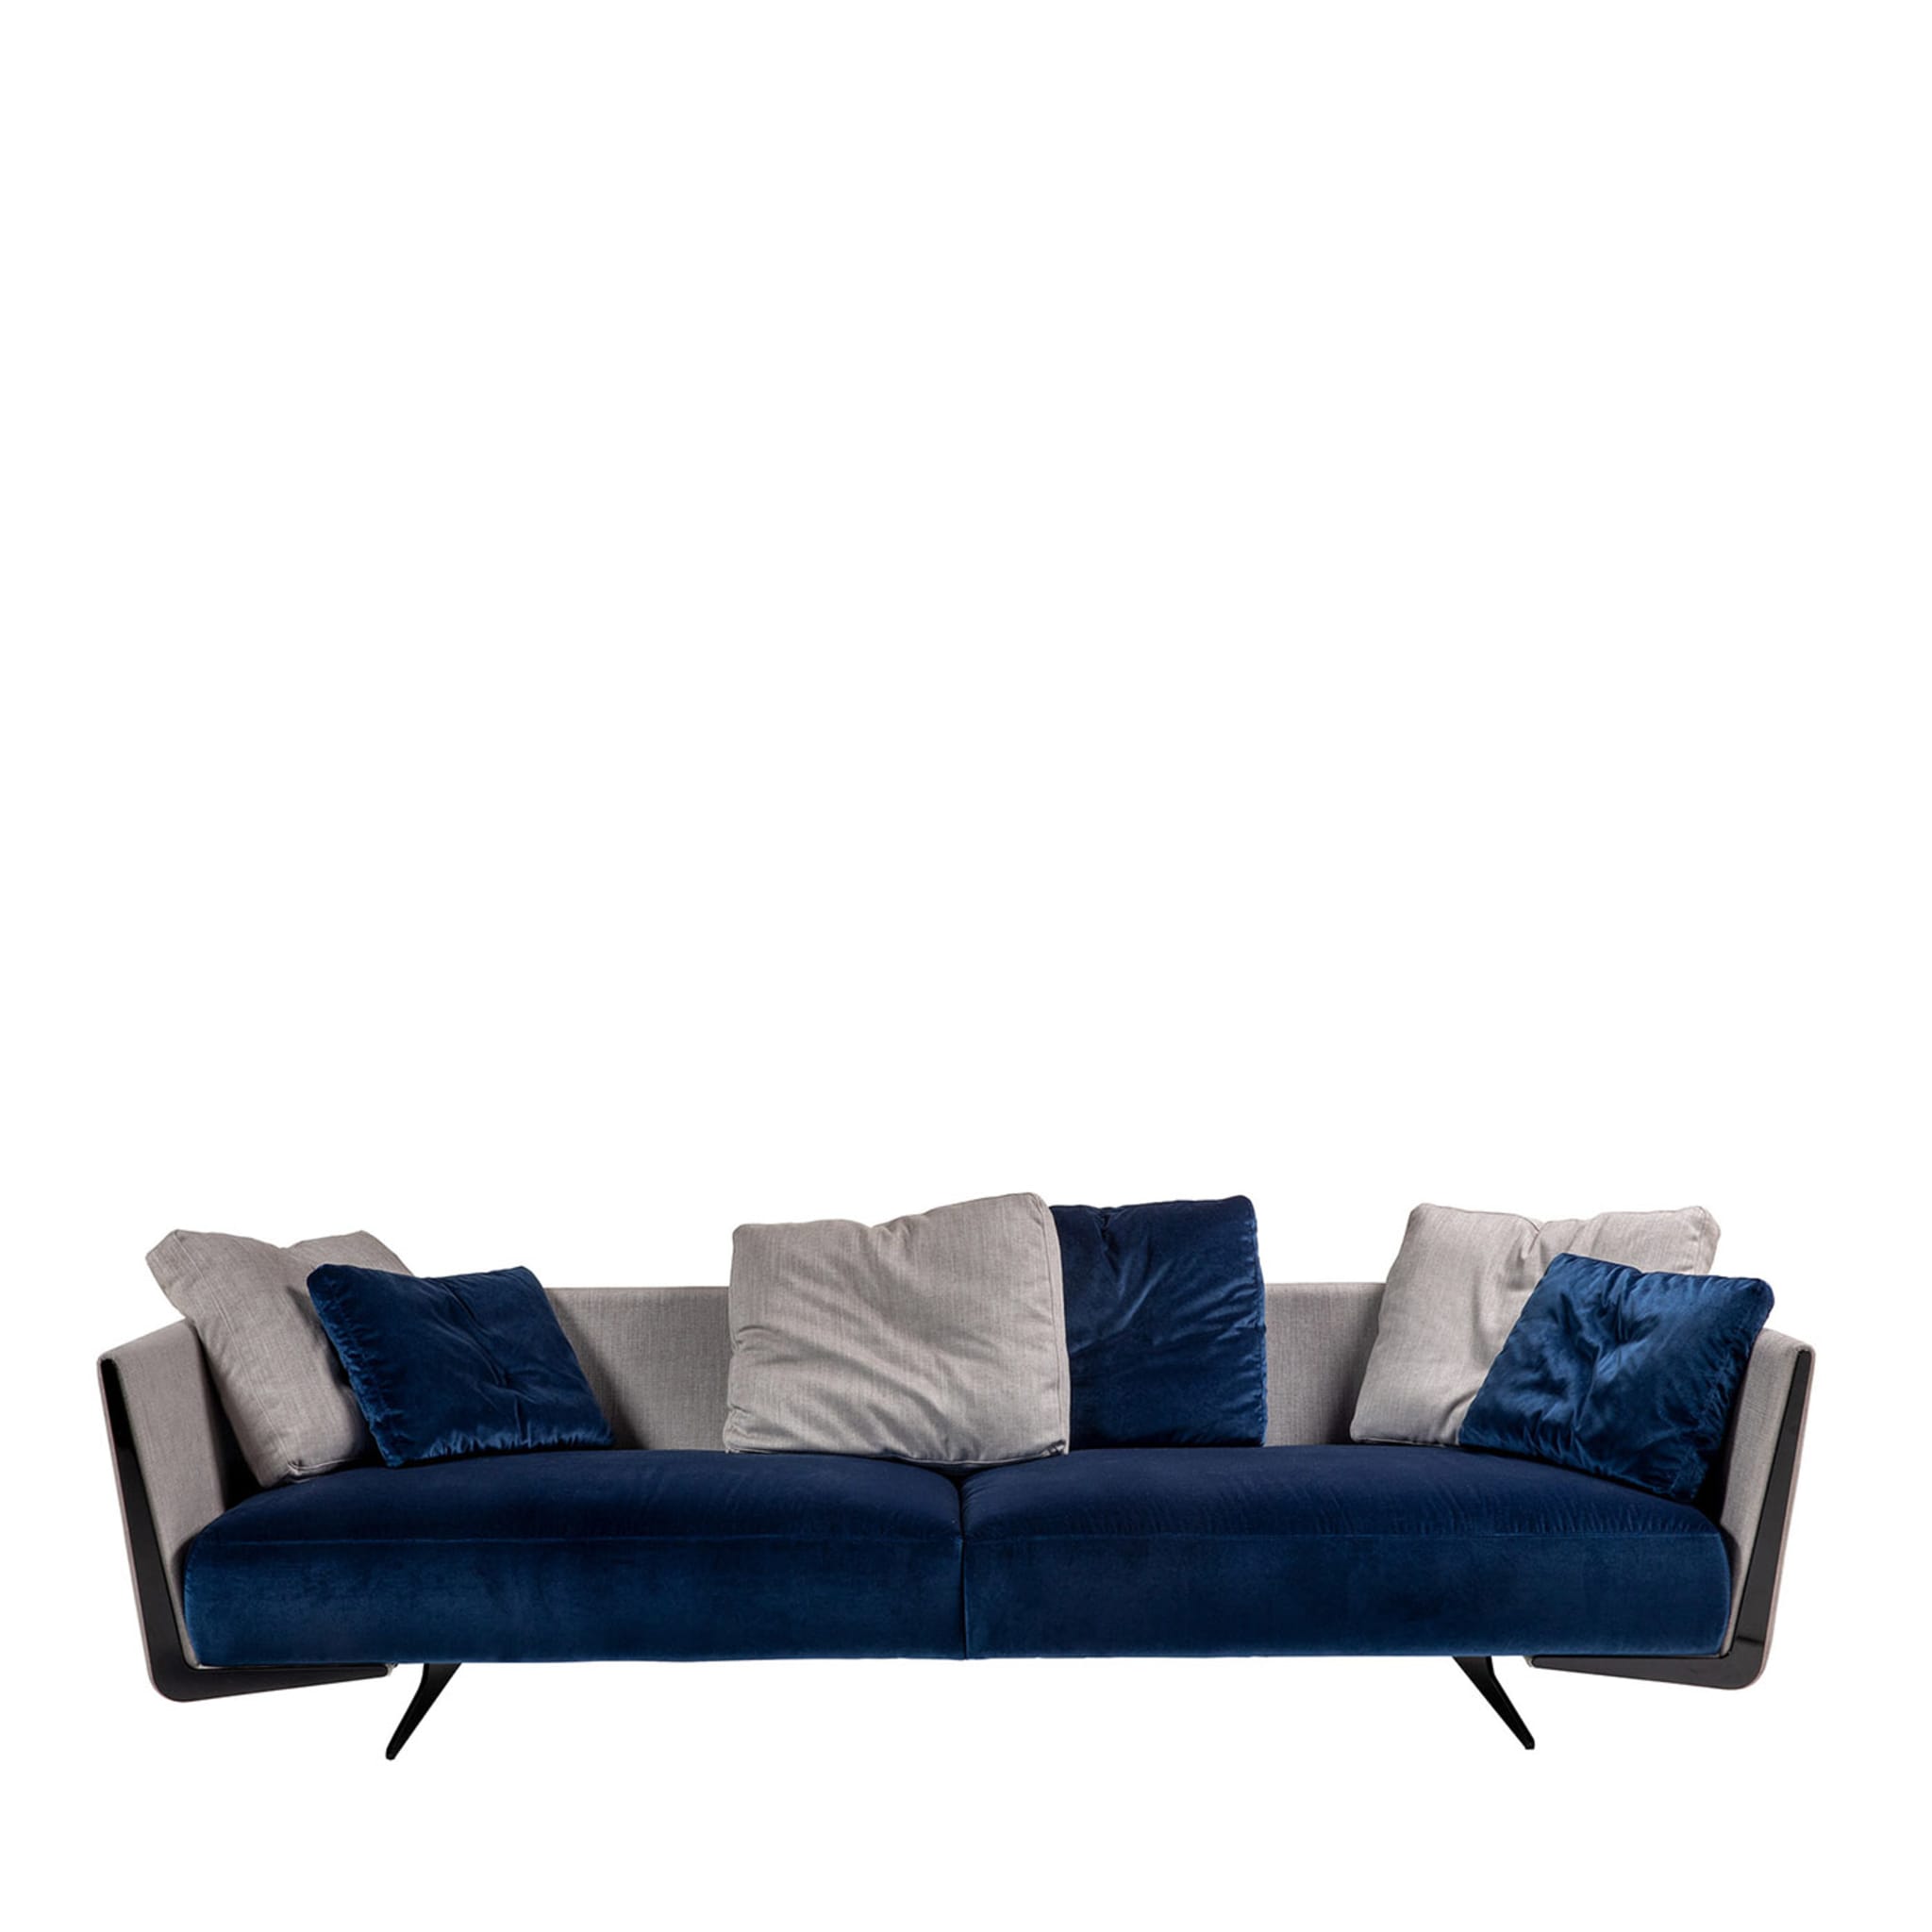 Blue Boomerang Sofa - Main view